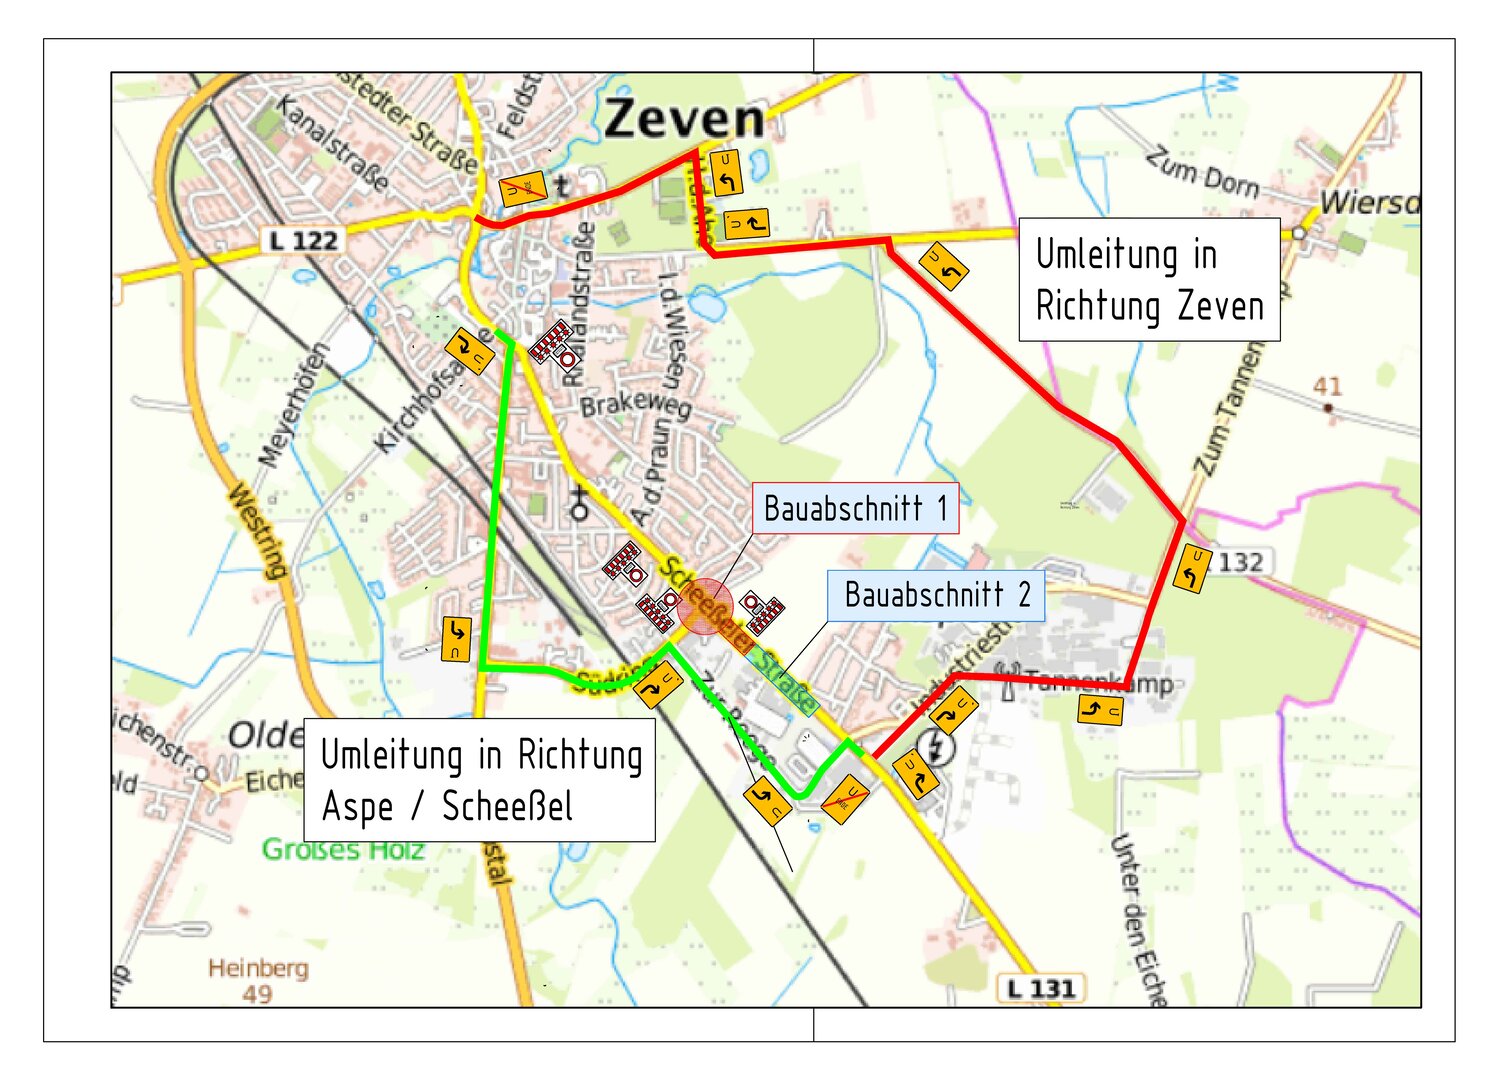 L131: In Zeven stratet der Neubau des Kreisel „Bauernwald“